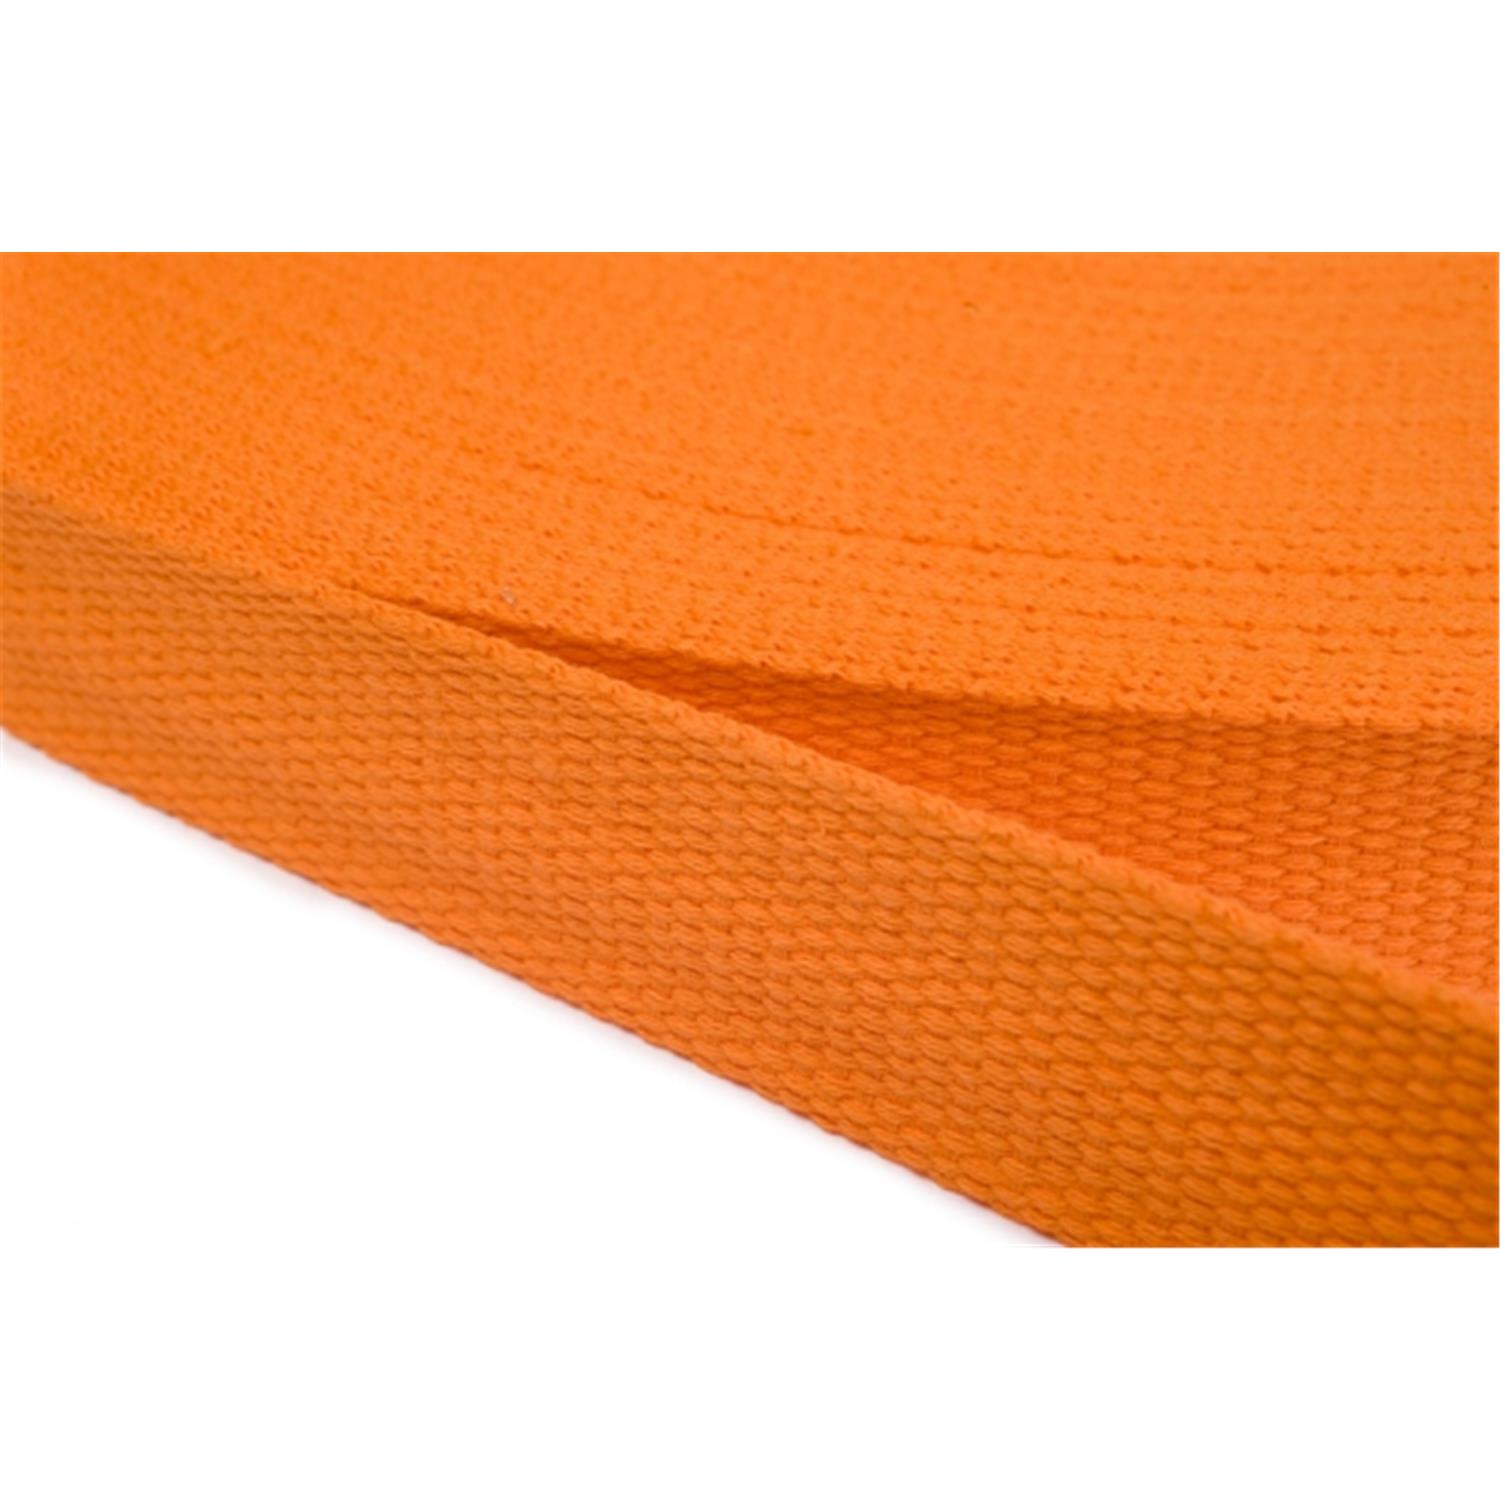 Gurtband aus Baumwolle 50mm in 20 Farben 06 - orange 12 Meter